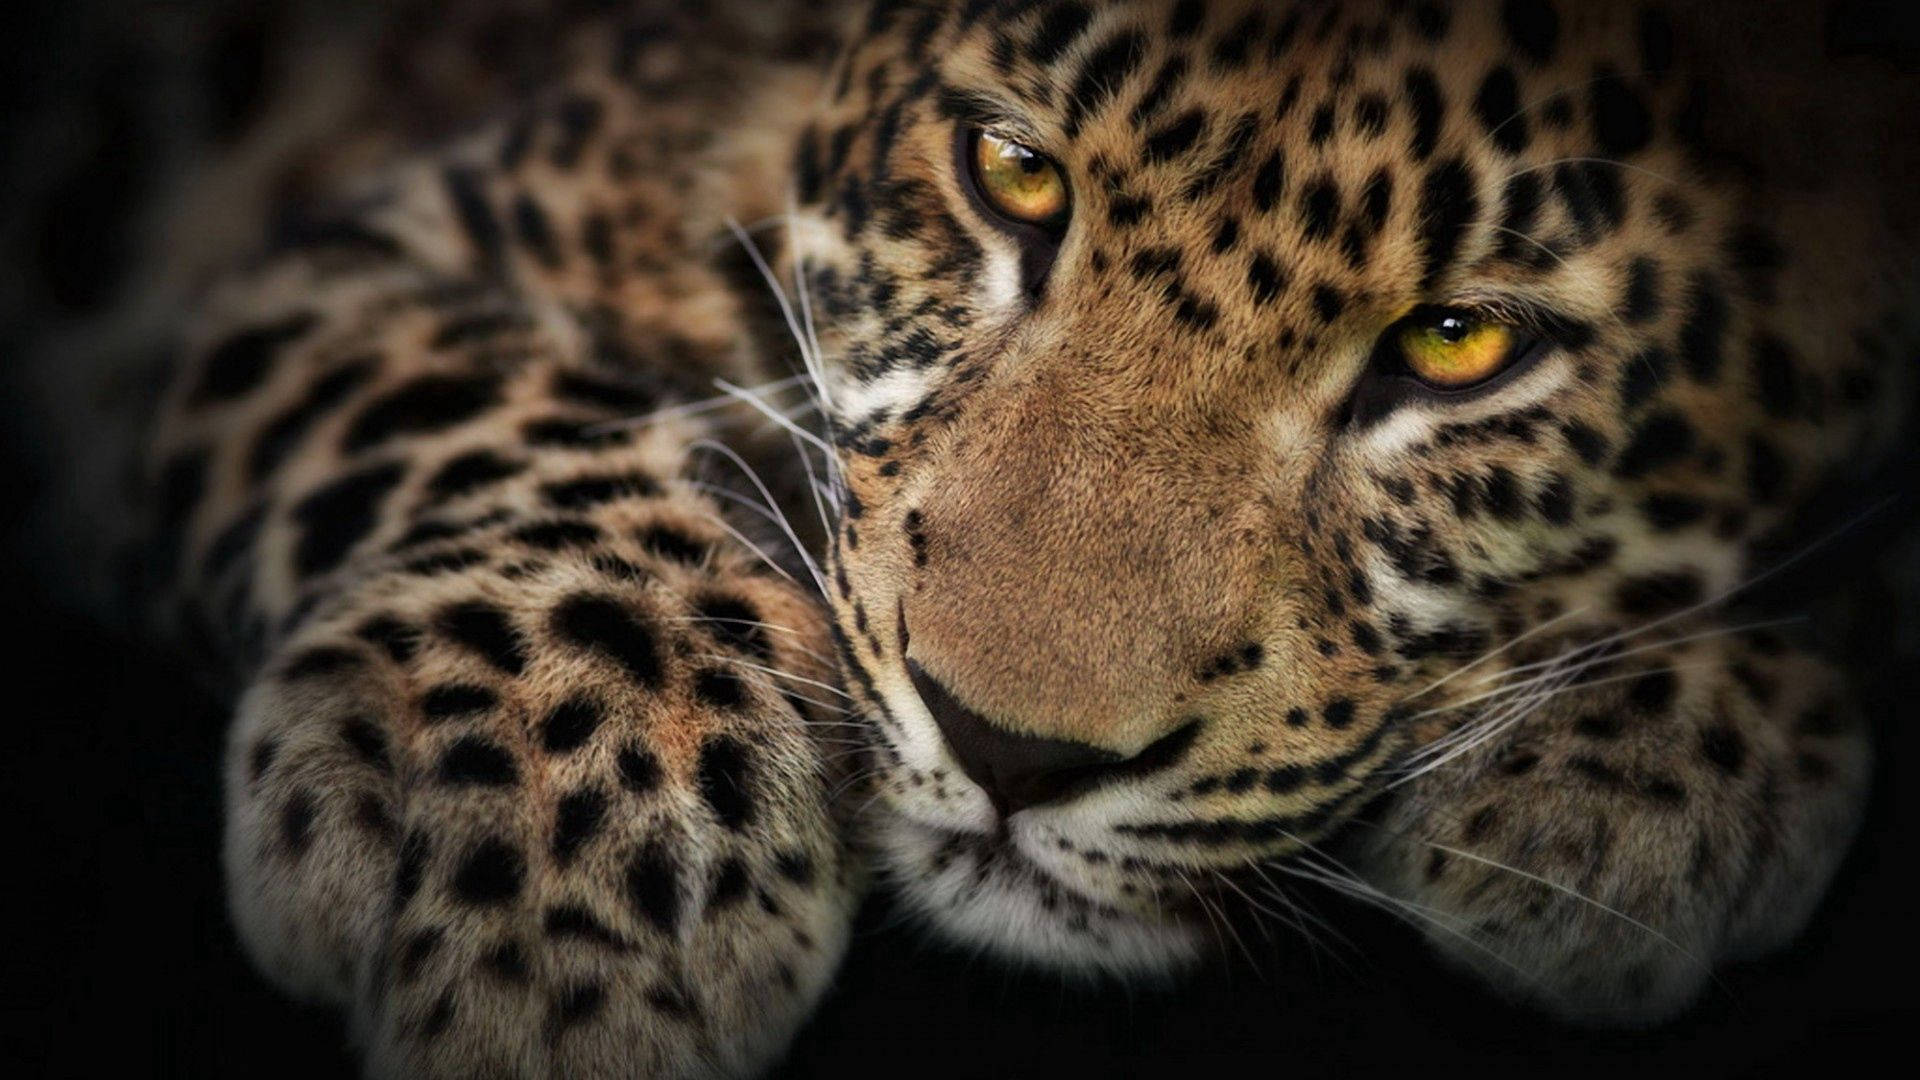 The Leopard Gaze HD Wallpaper